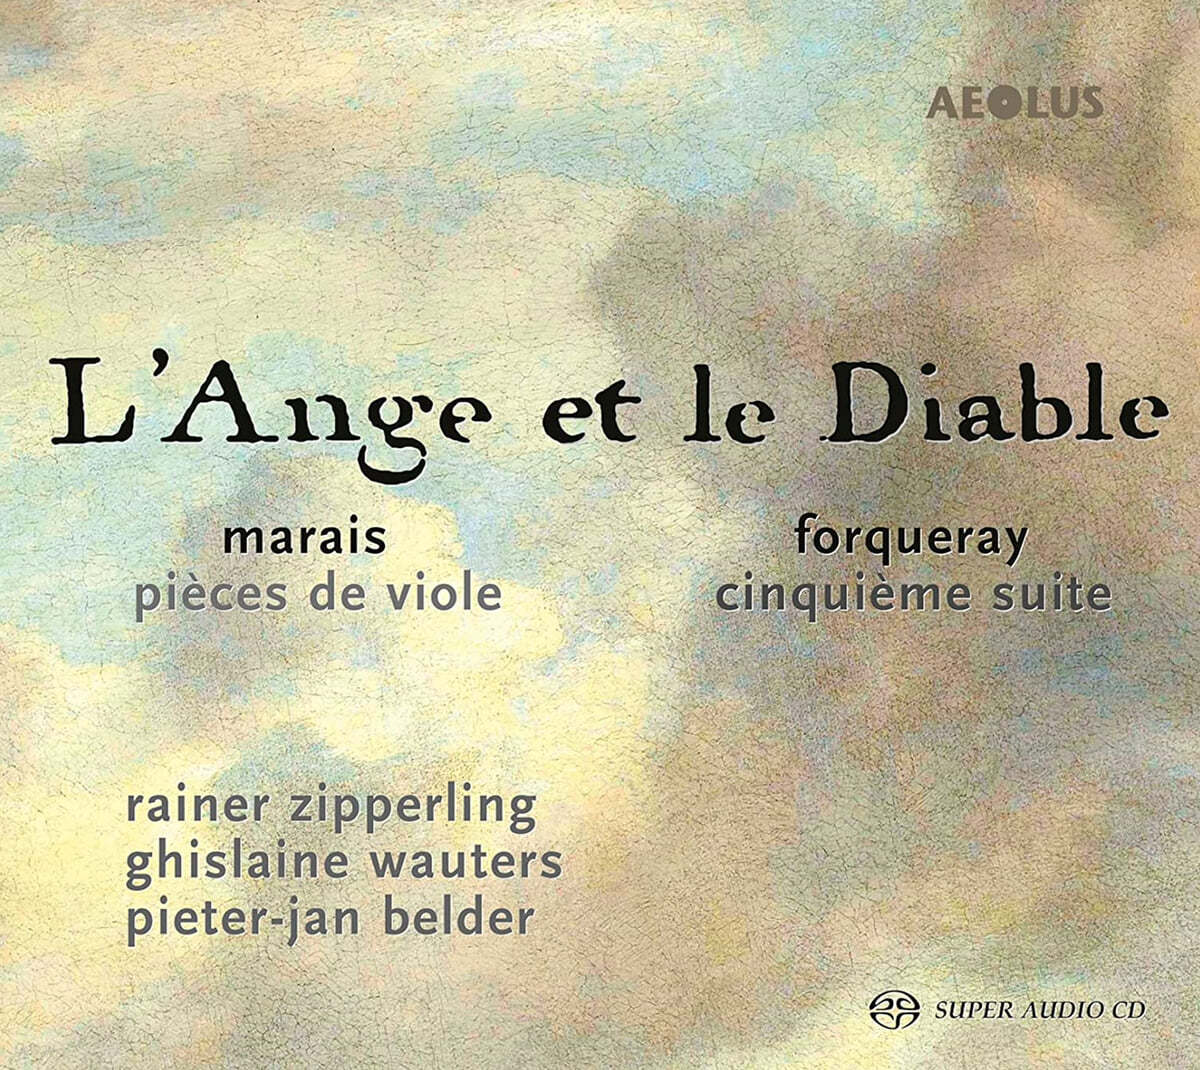 마렝 마레와 포르쿠레의 비올 작품집 (Marais: Pieces de Viole / Forqueray: Cinquieme Suite)